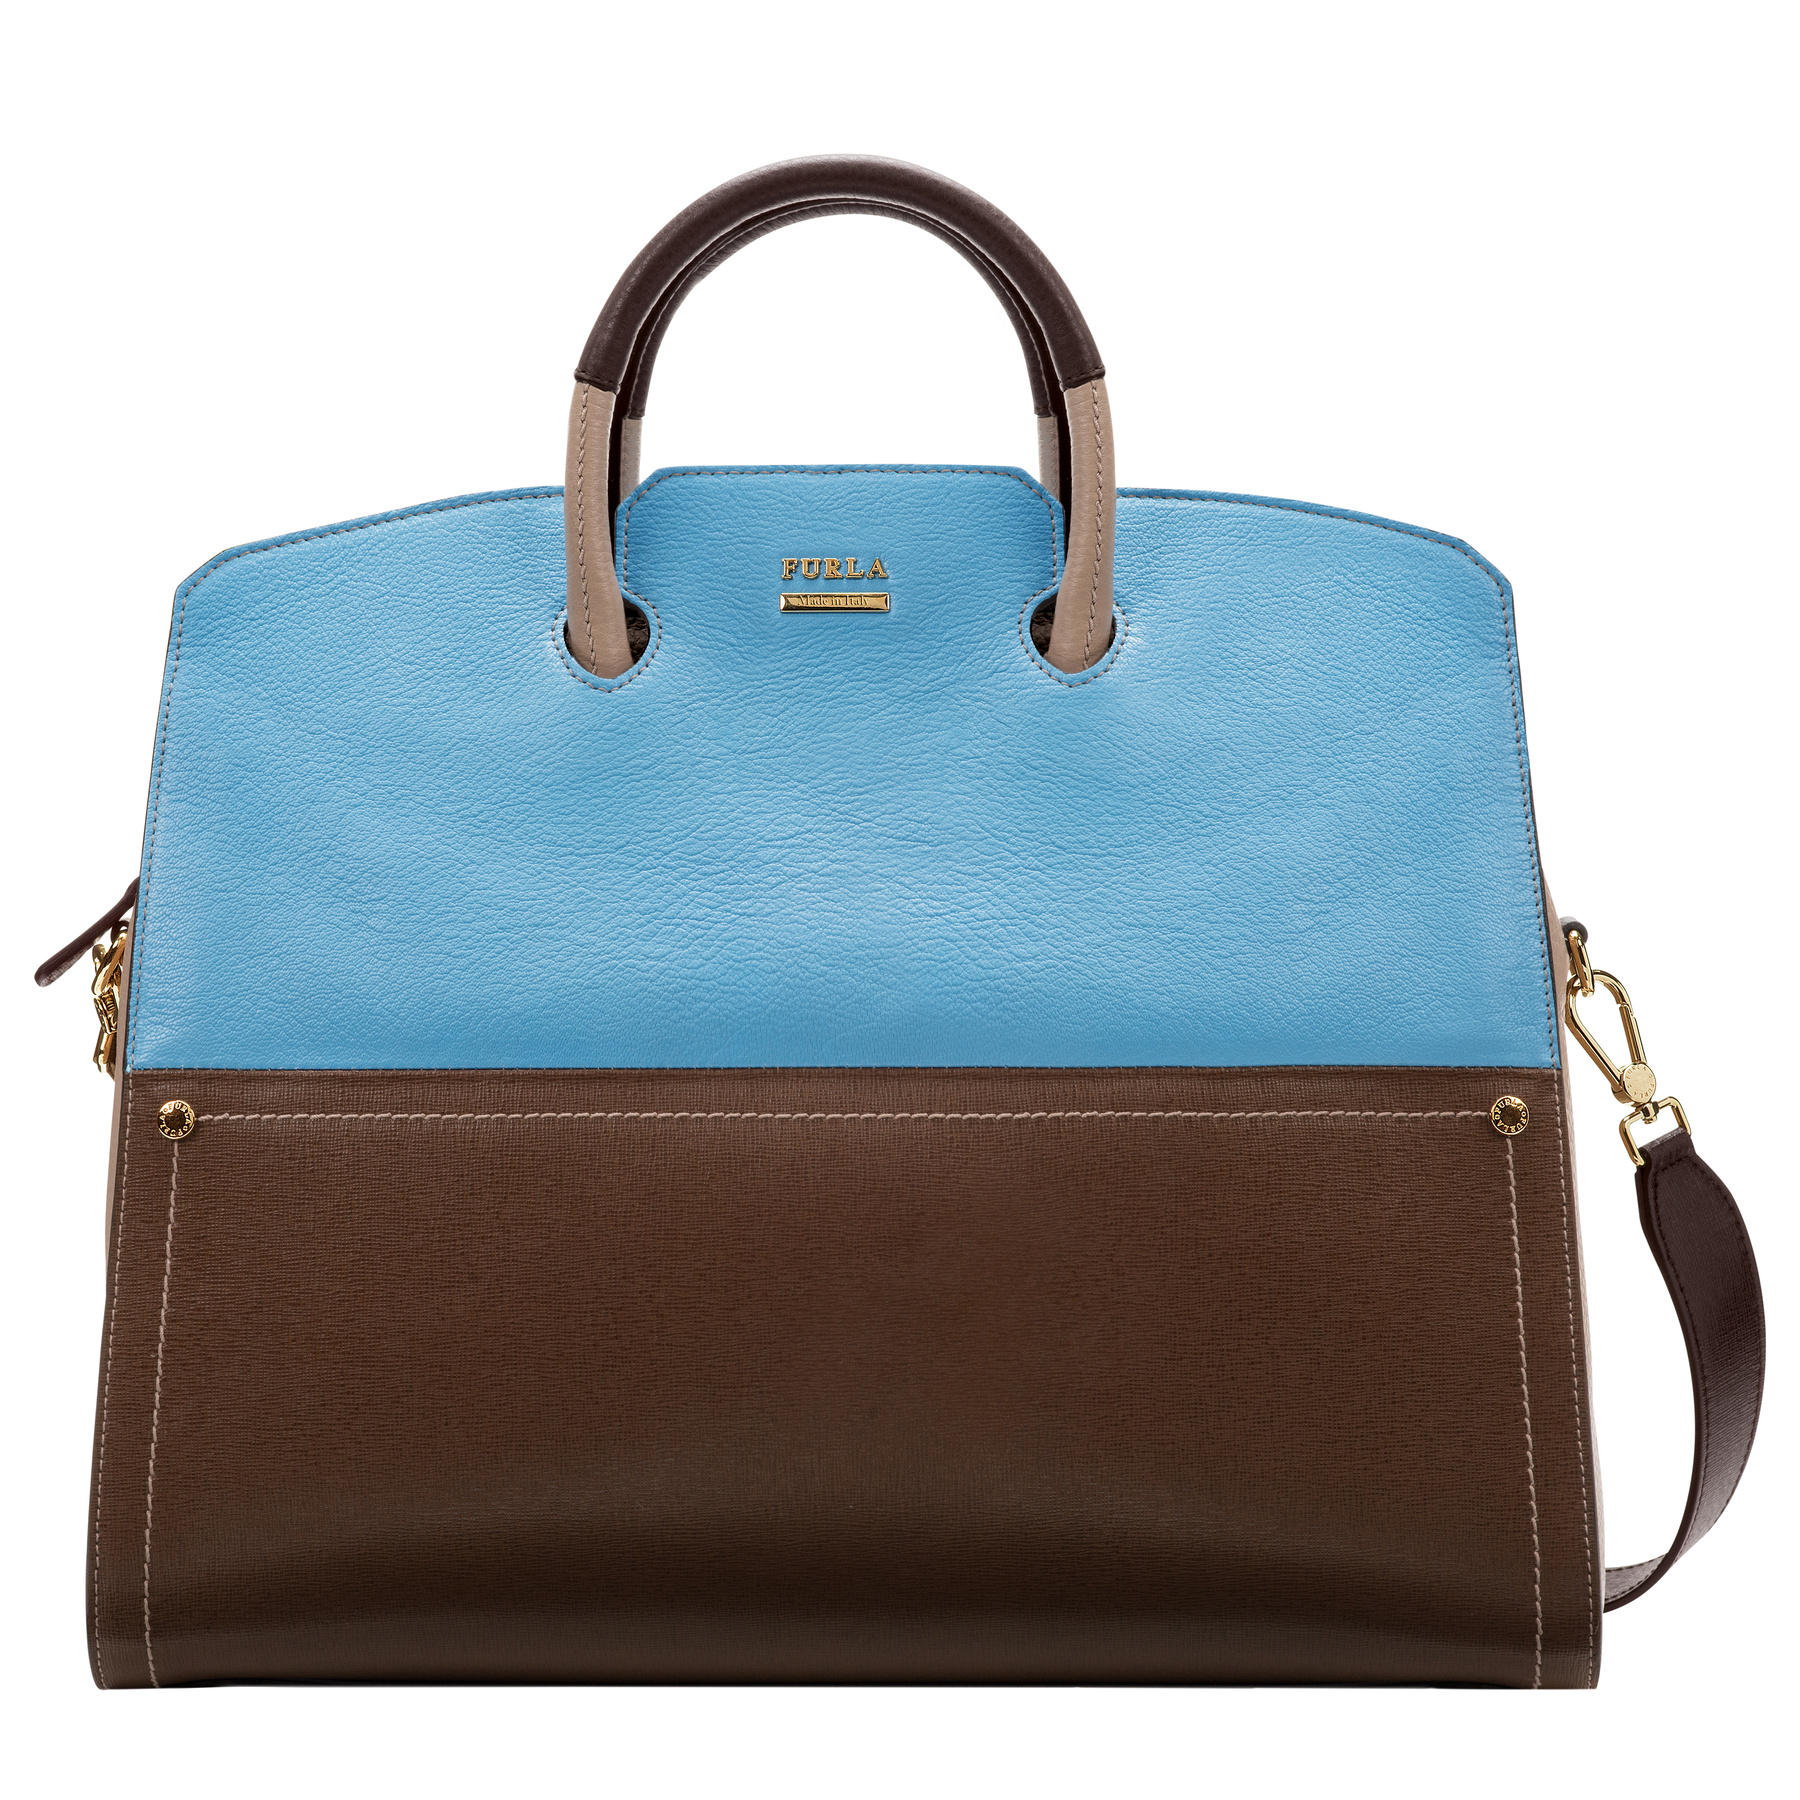 A Céline-ellátmánnyal sincs gond a luxusáruházban, pakoljon hitelkártyát. Egy uhyanilyen táska kék színben 447900 forint az Il Bacio di Stilében.